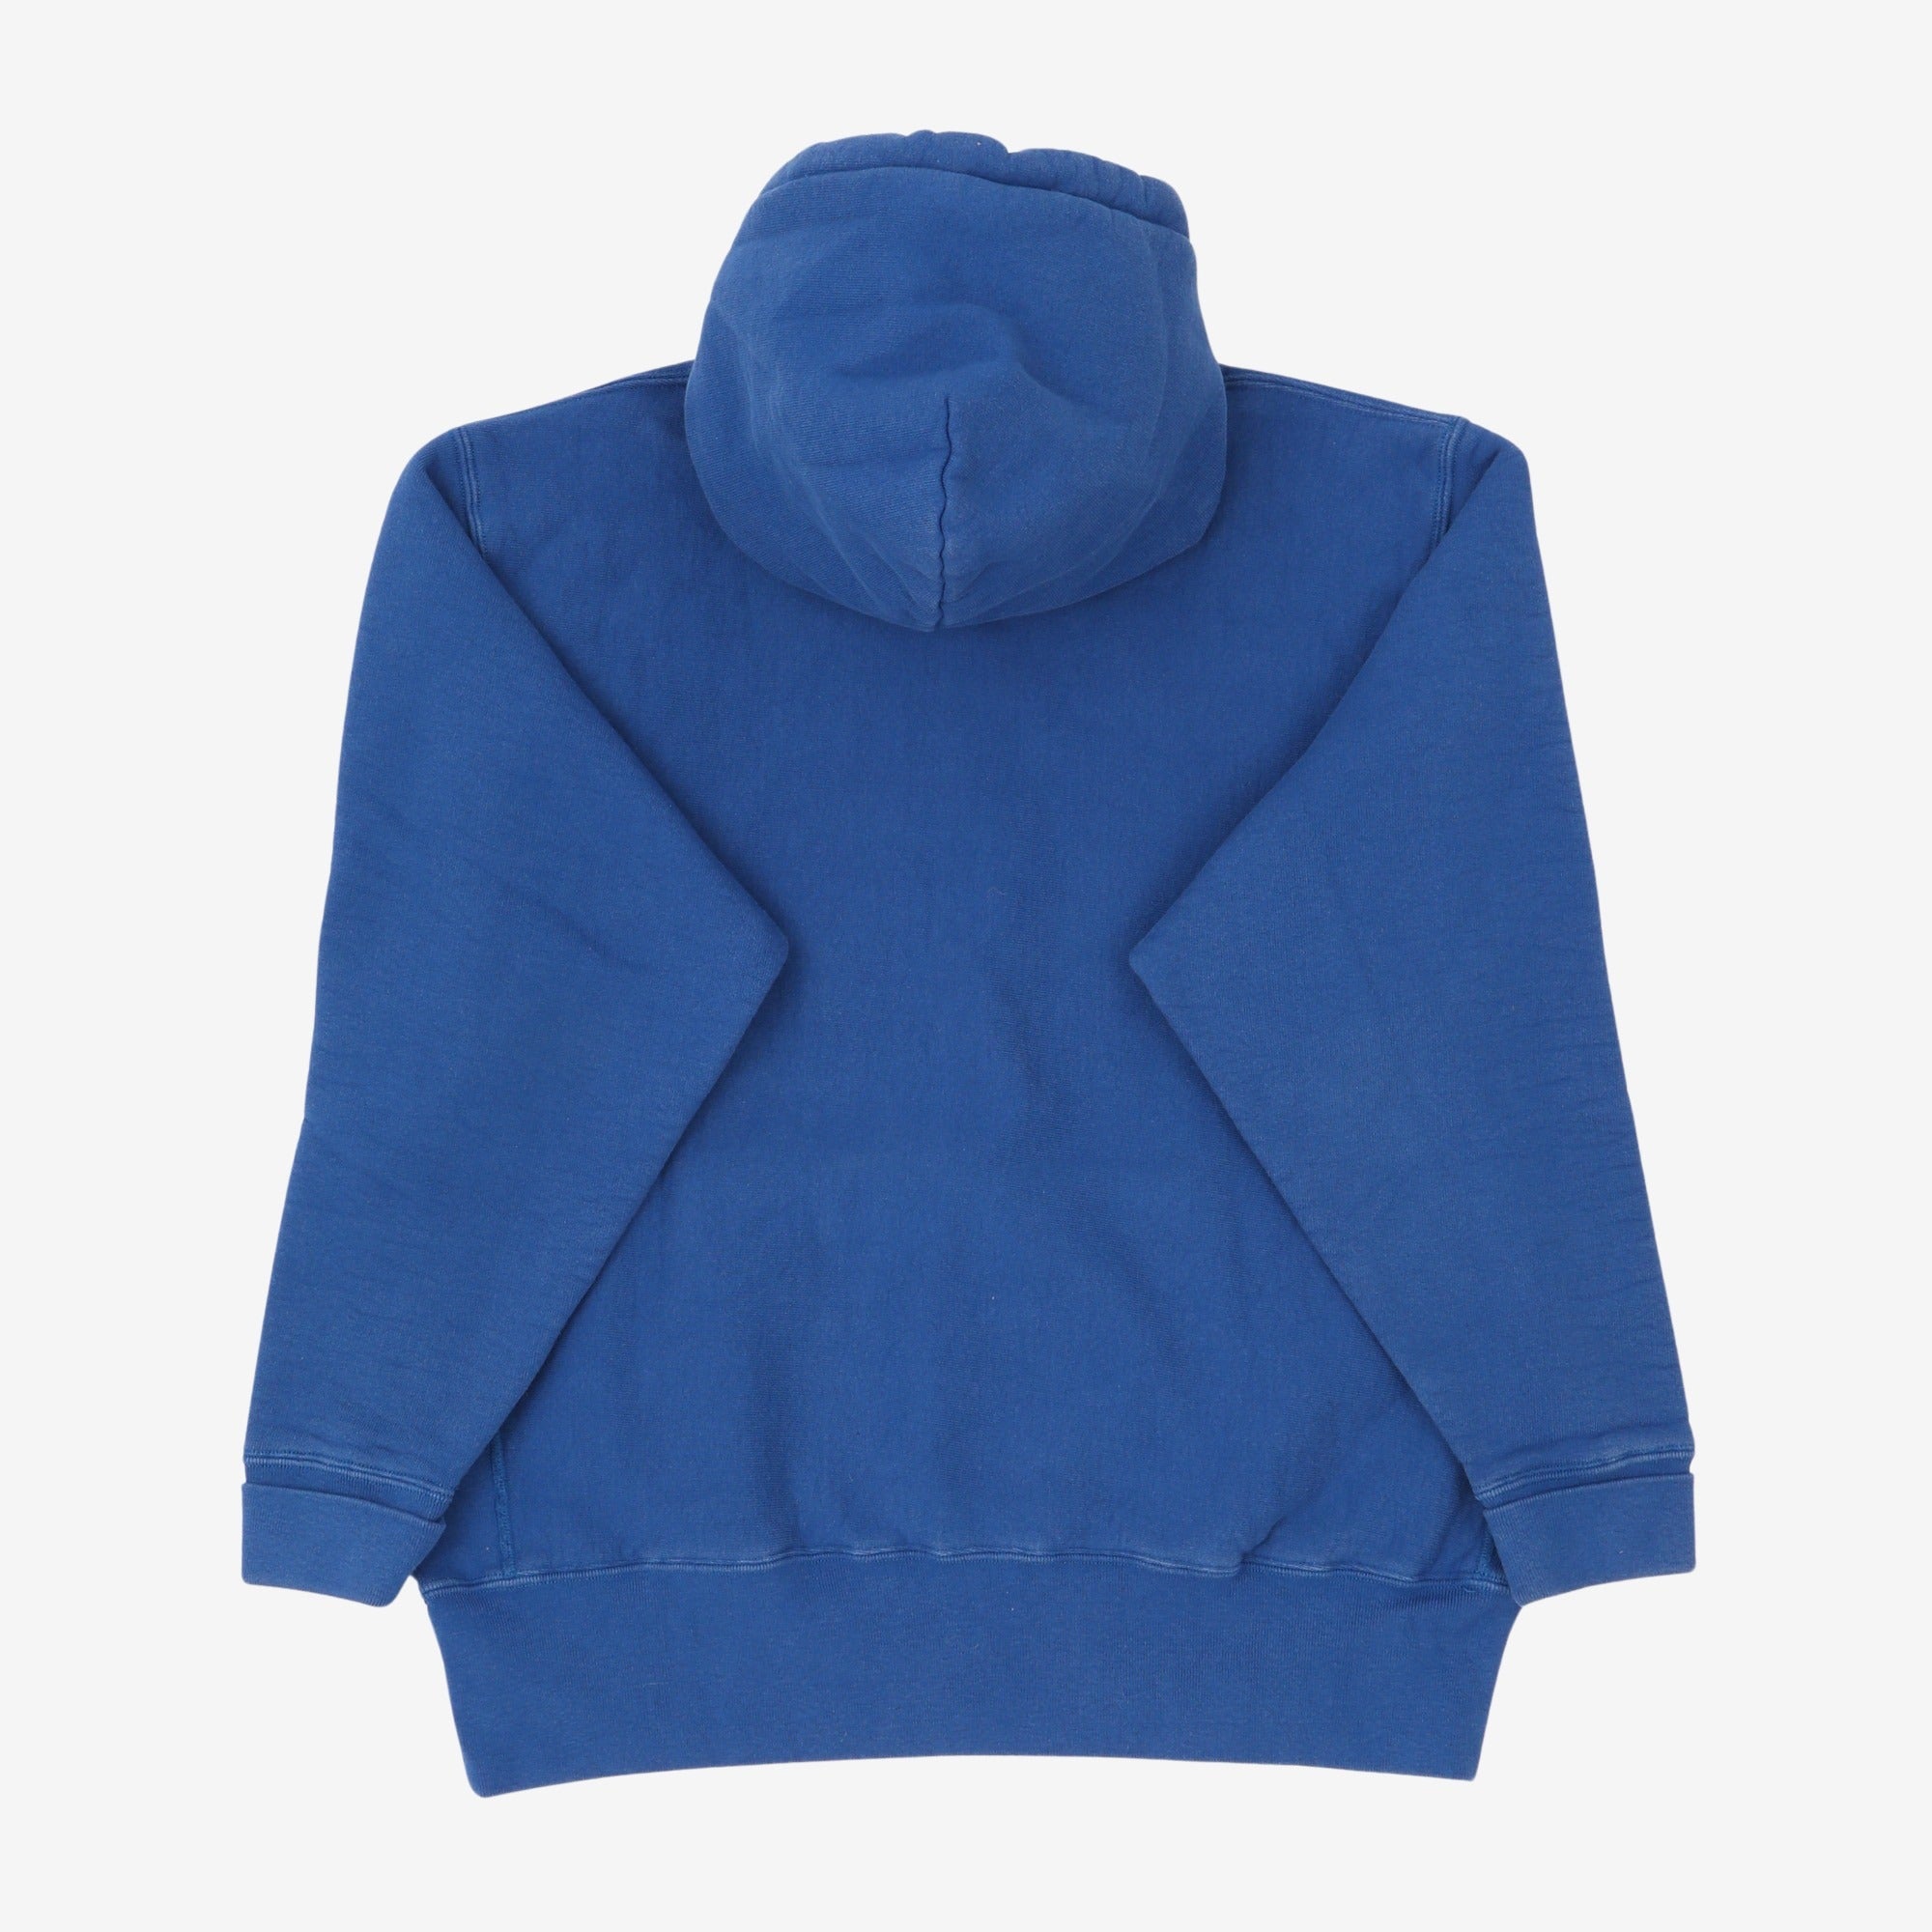 12oz Hooded Sweatshirt